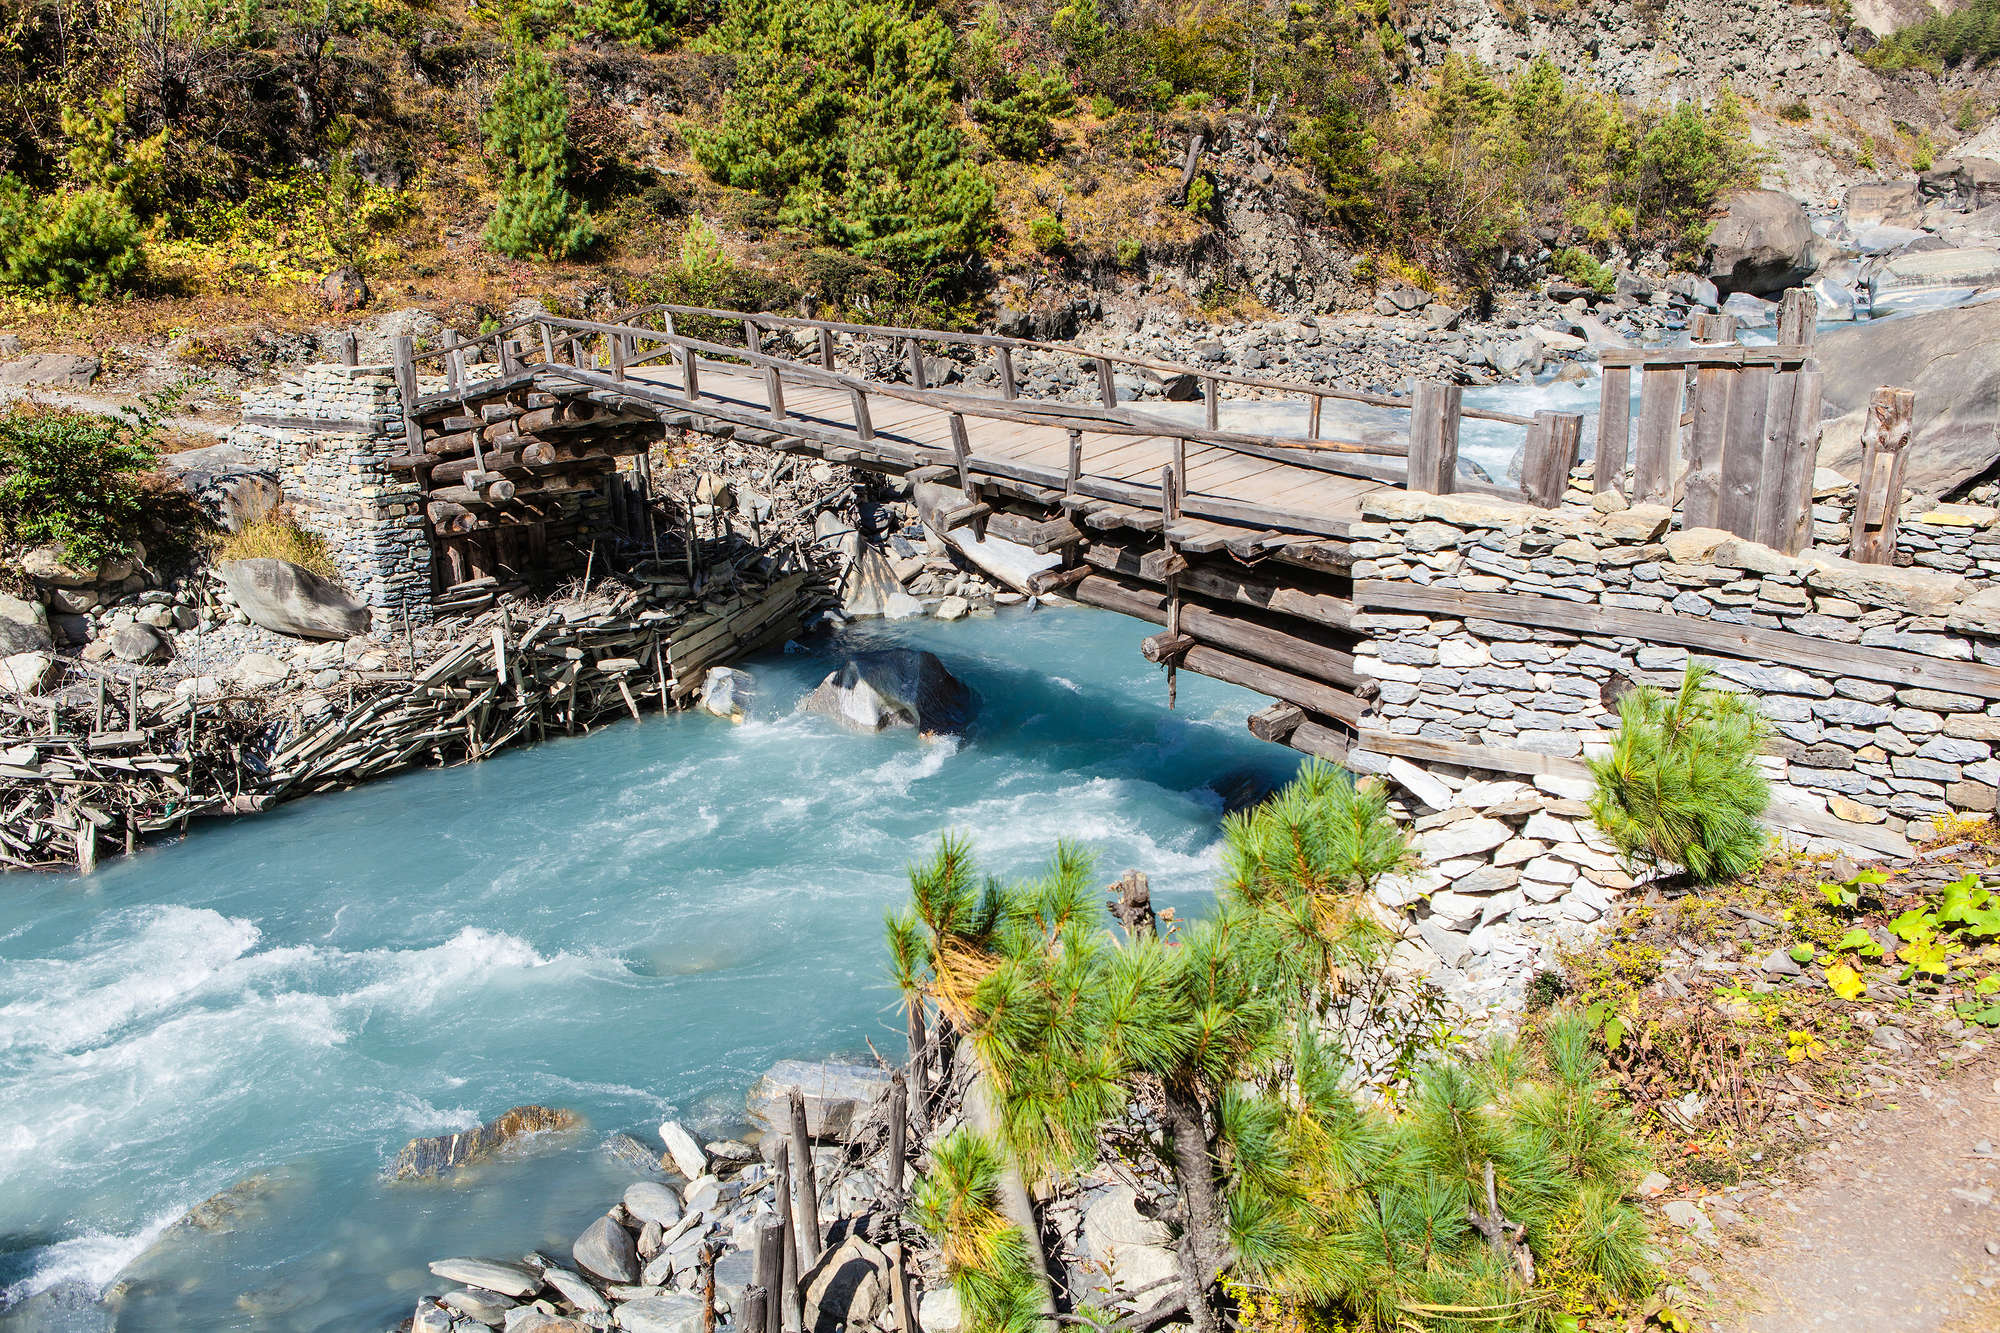             Natur Fototapete Fluss mit alter Holzbrücke auf Strukturvlies
        